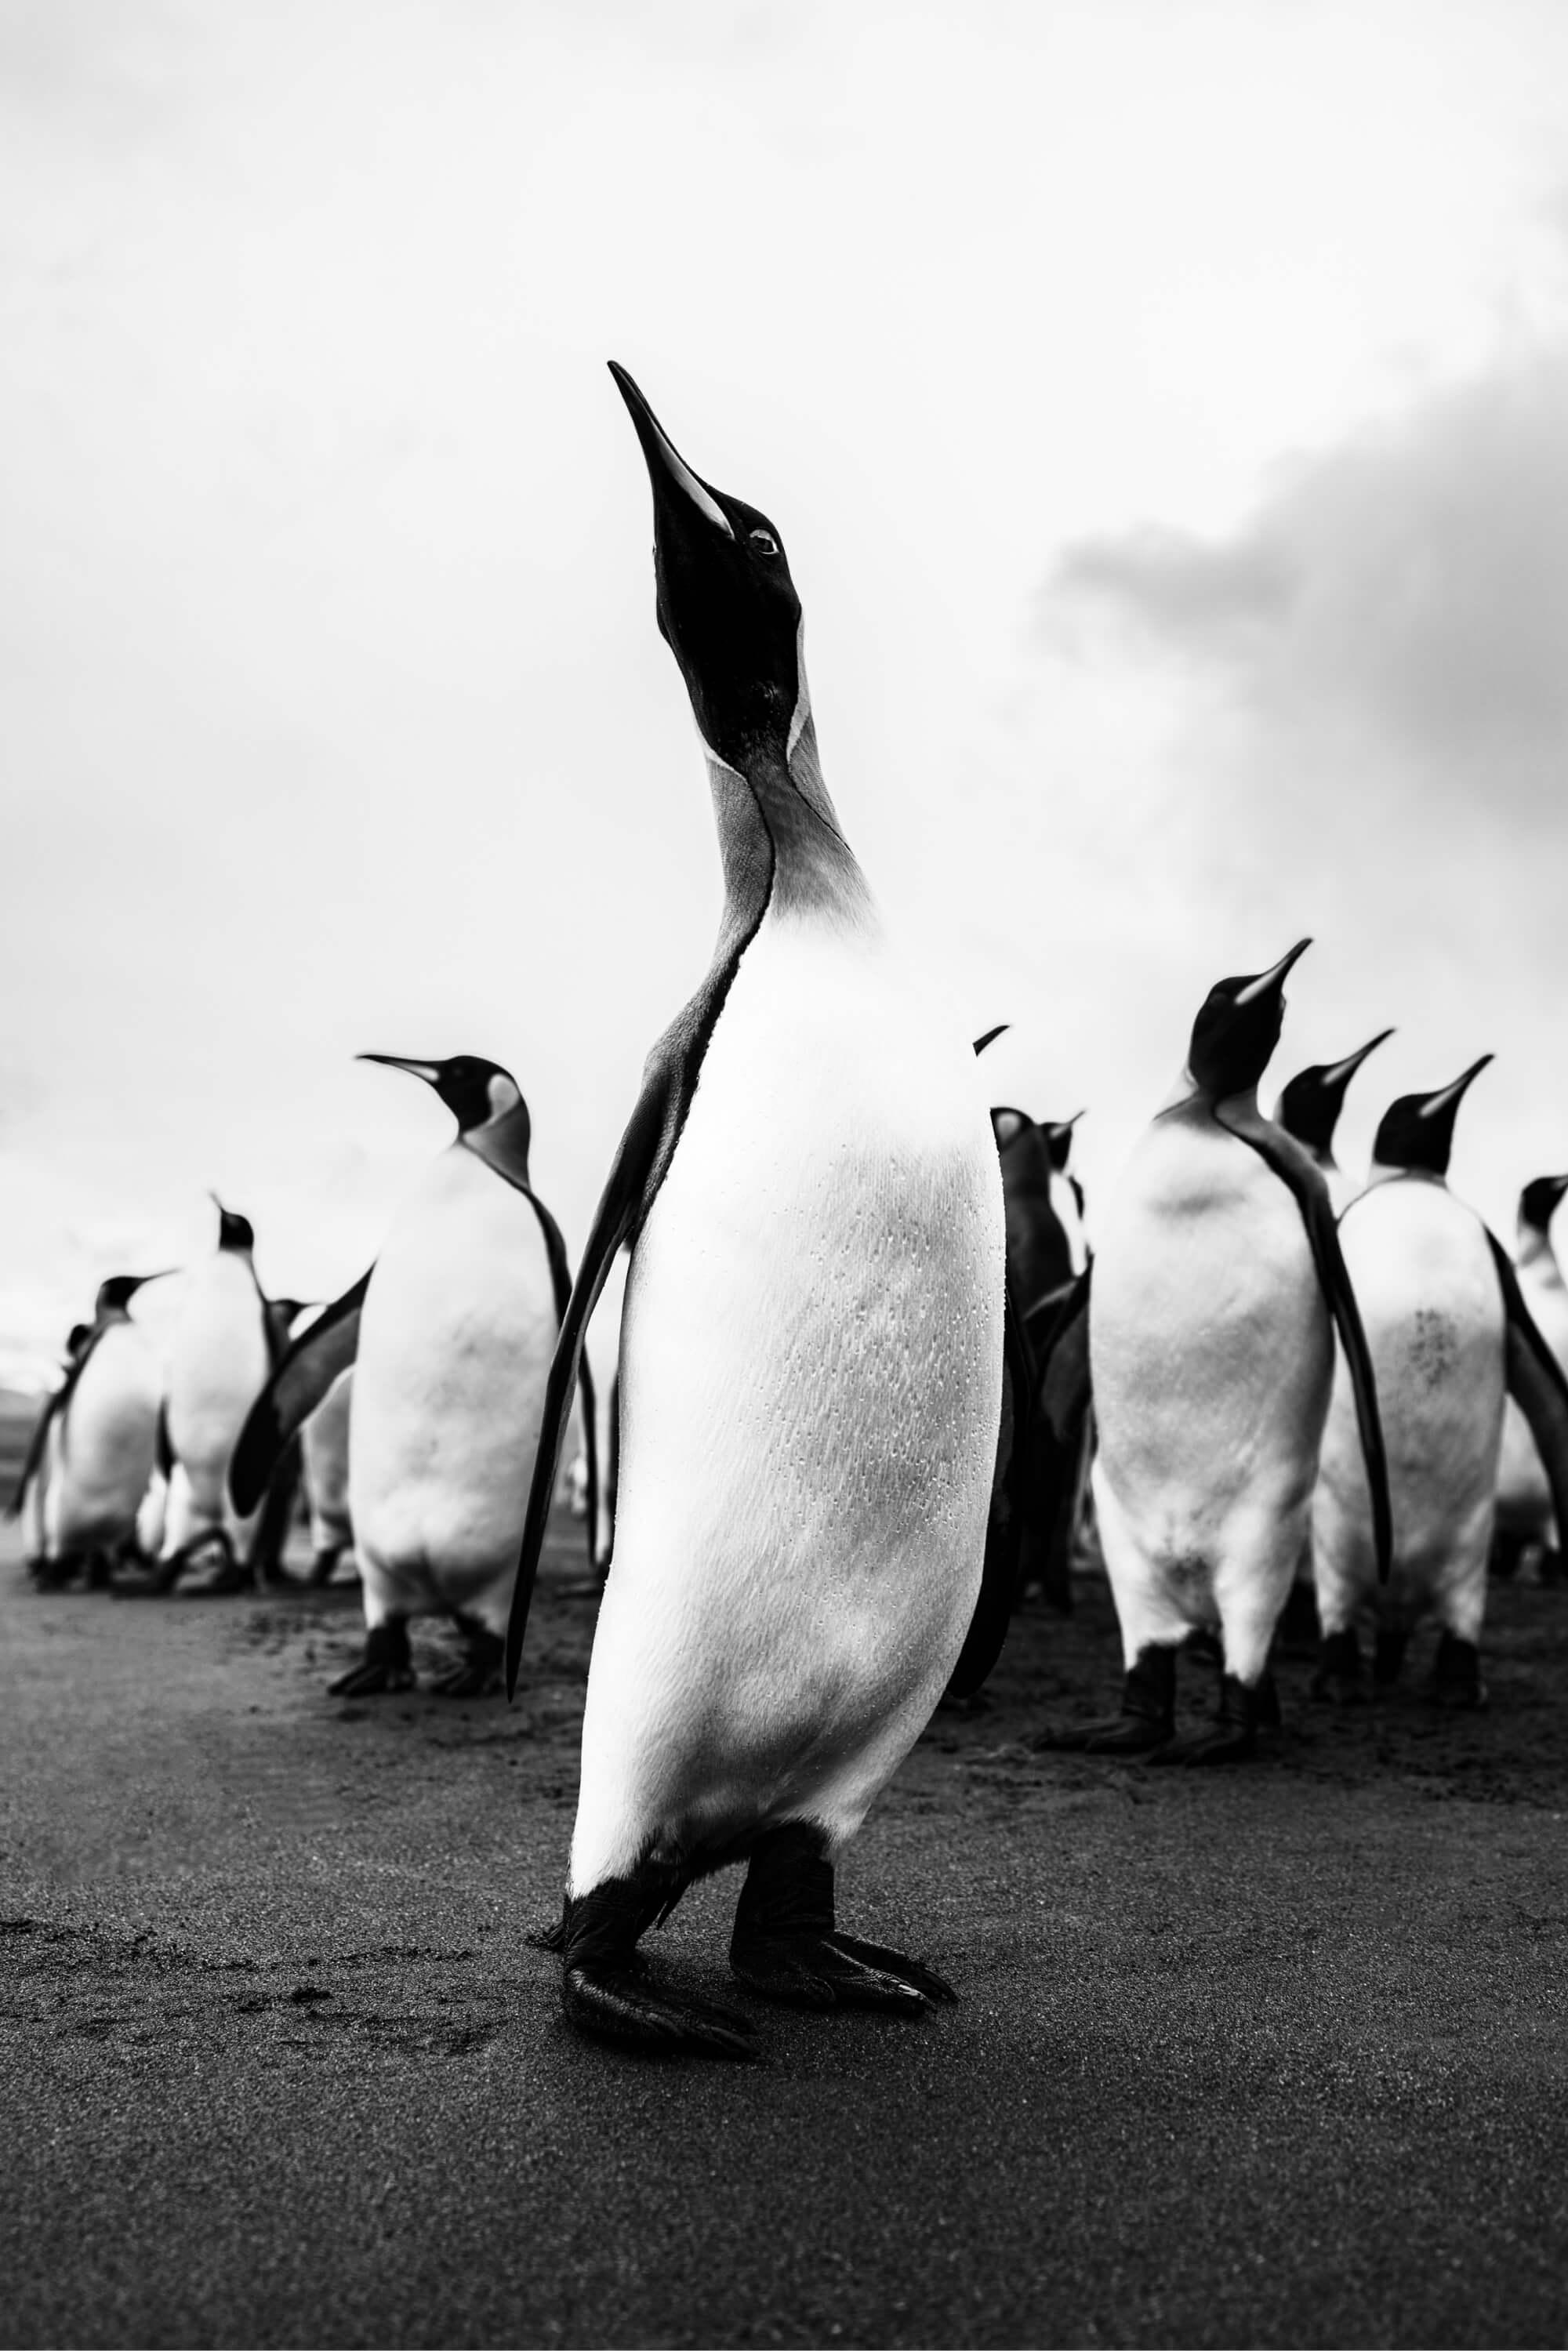 ملك البطاريق.  المصور: أرتيم شيستاكوف. المكان: القطب الجنوبي.